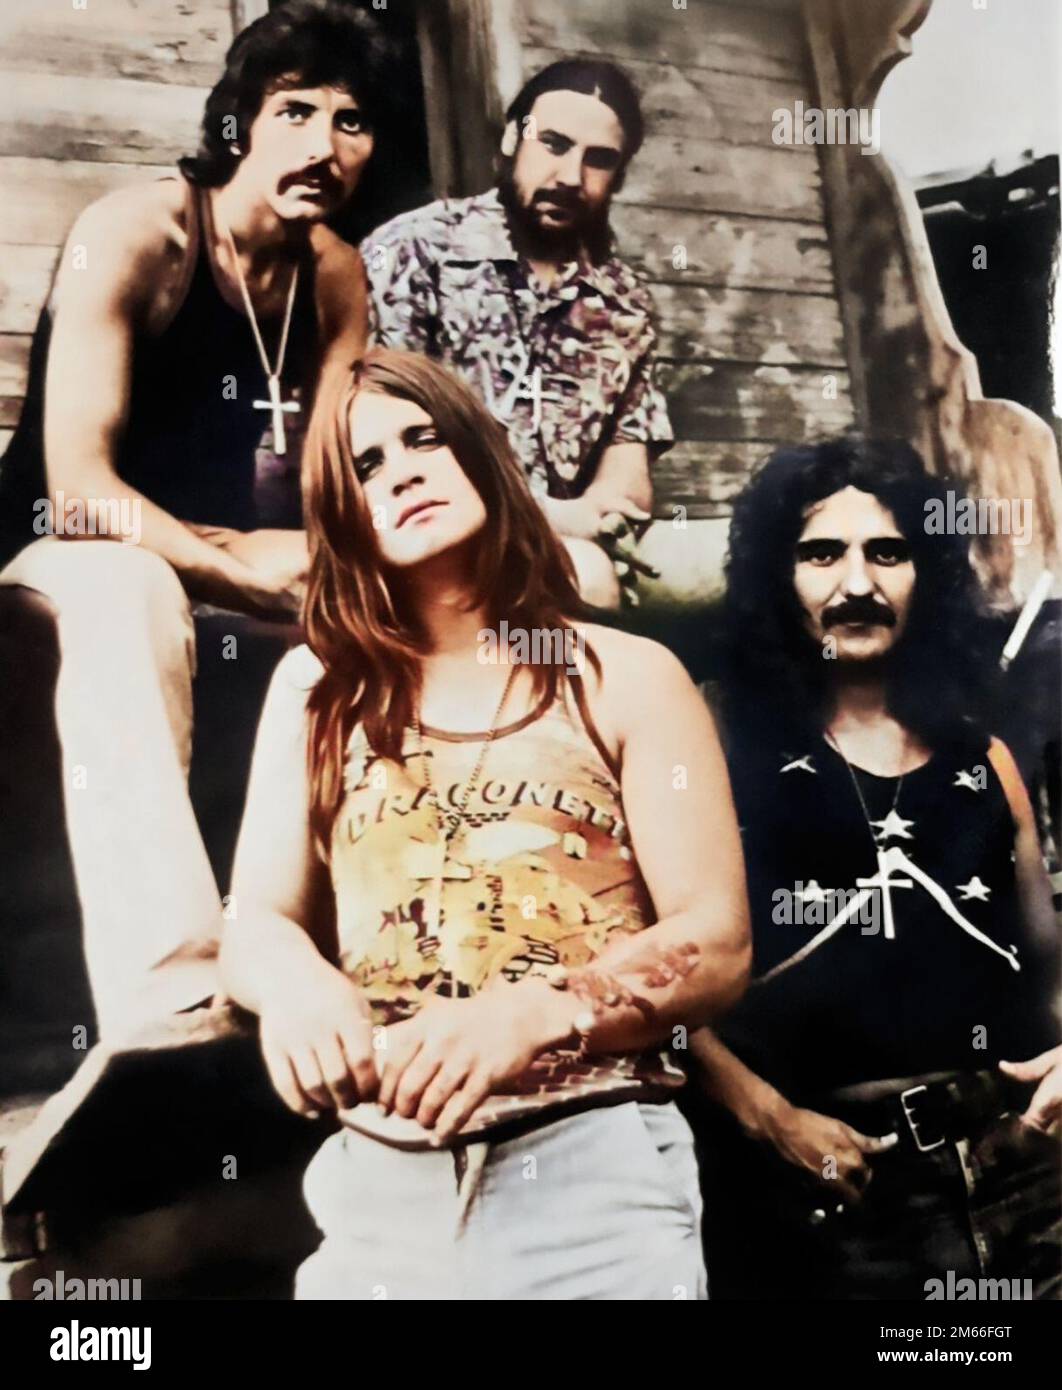 Les rockers en métaux lourds, Black Sabbath, début 1970s (Iommi, Osbourne, Ward et Butler) colorisés Banque D'Images